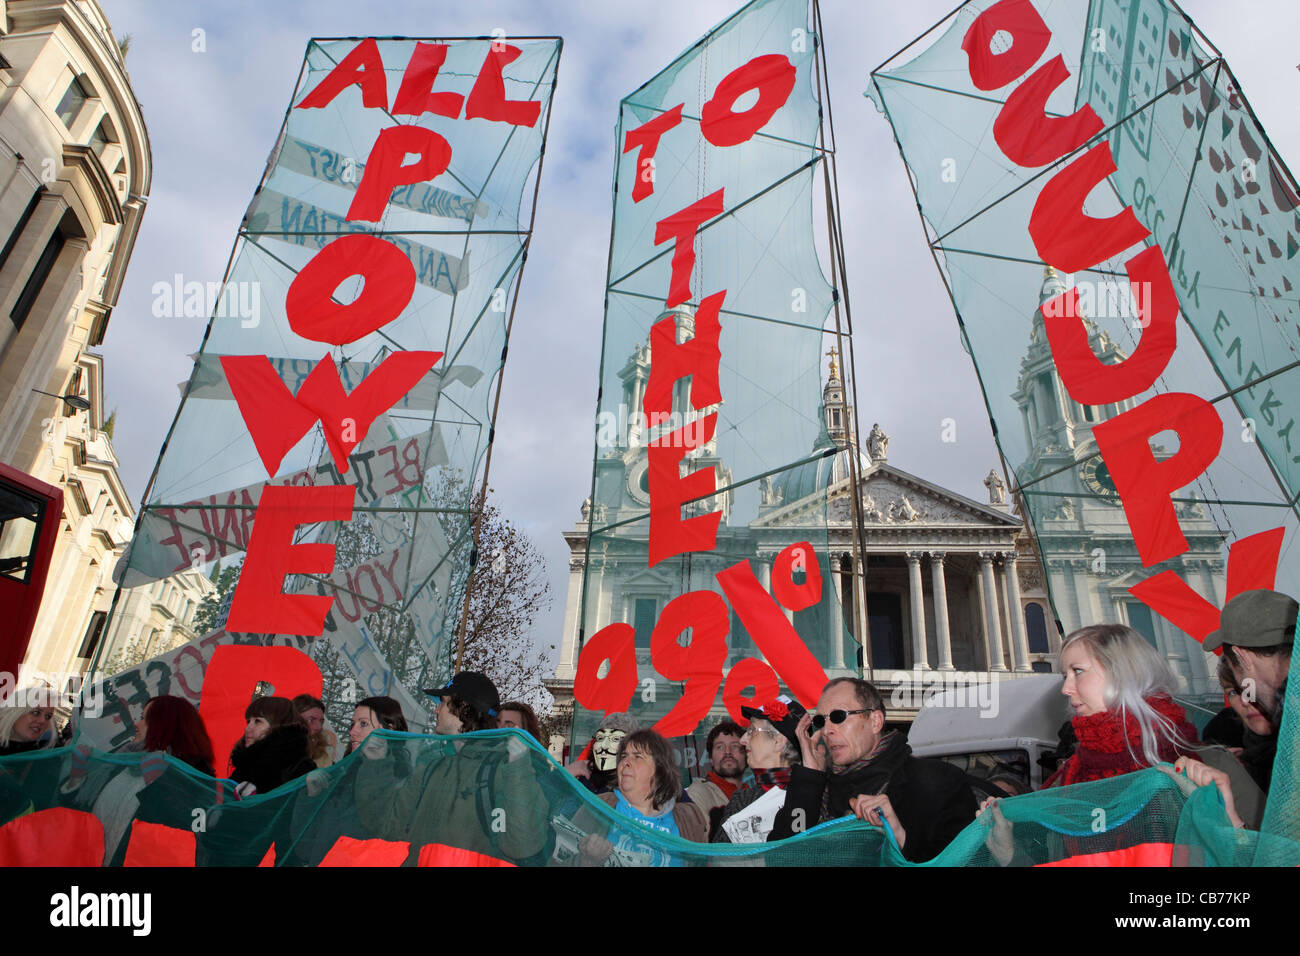 "Tout le pouvoir aux 99 % occupent' Occupy London manifestation de protestation, la Cathédrale St Paul, London, UK Banque D'Images